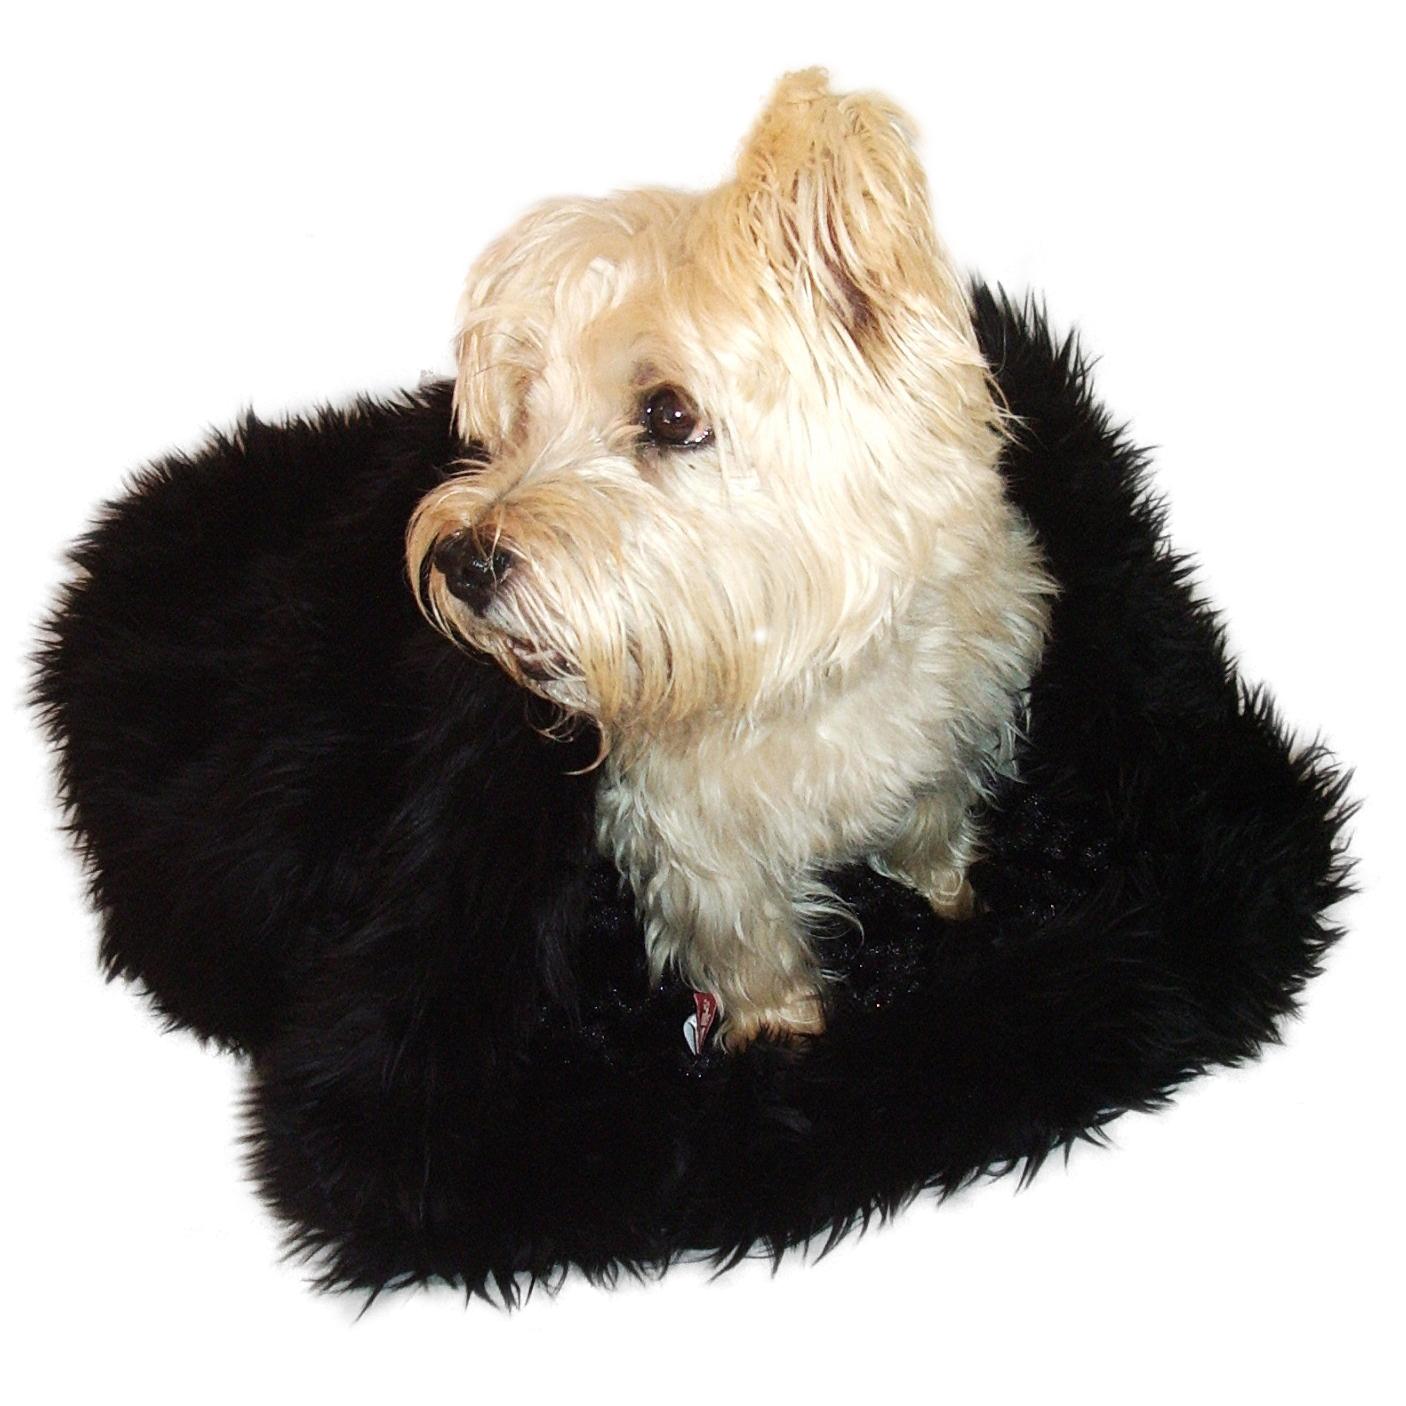 3-in-1 Cozy Dog Cuddle Sack - Black Shag